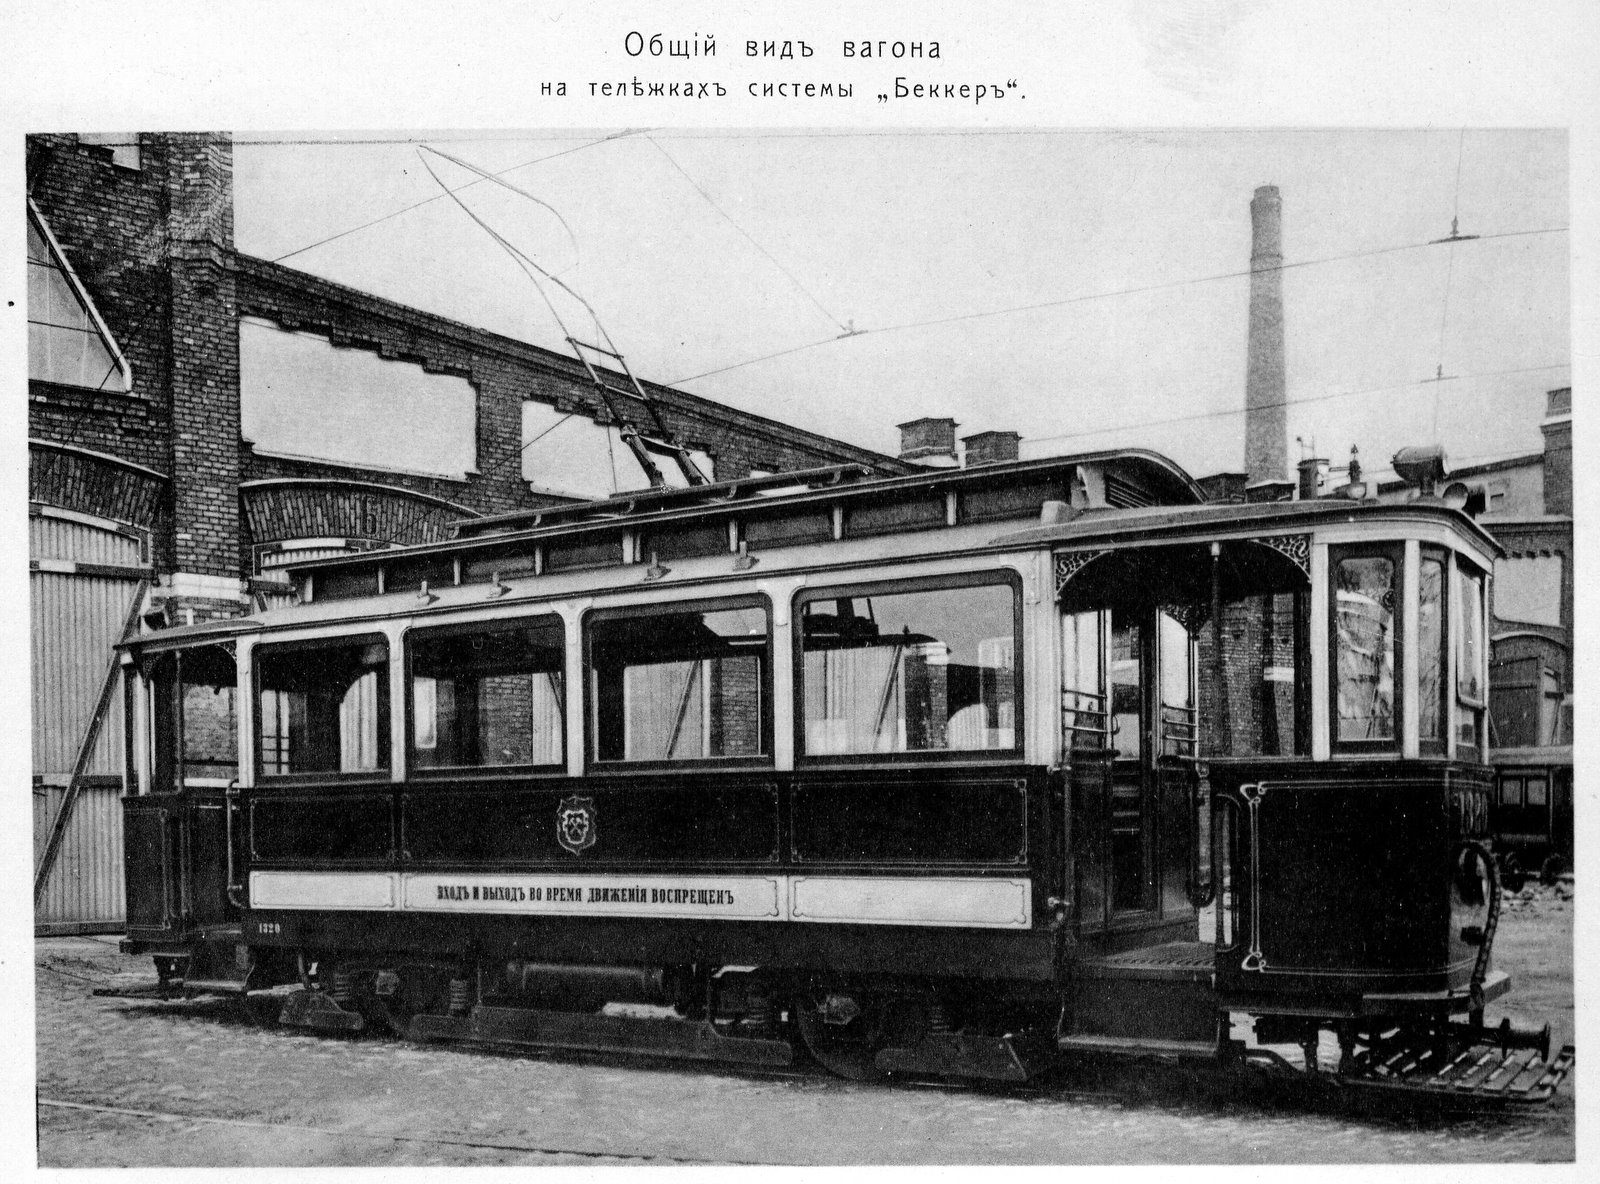 Трамвайный вагон МП-8 на тележках Беккера. Выпускался Мытыщинским и Коломенским заводами в 1908 году